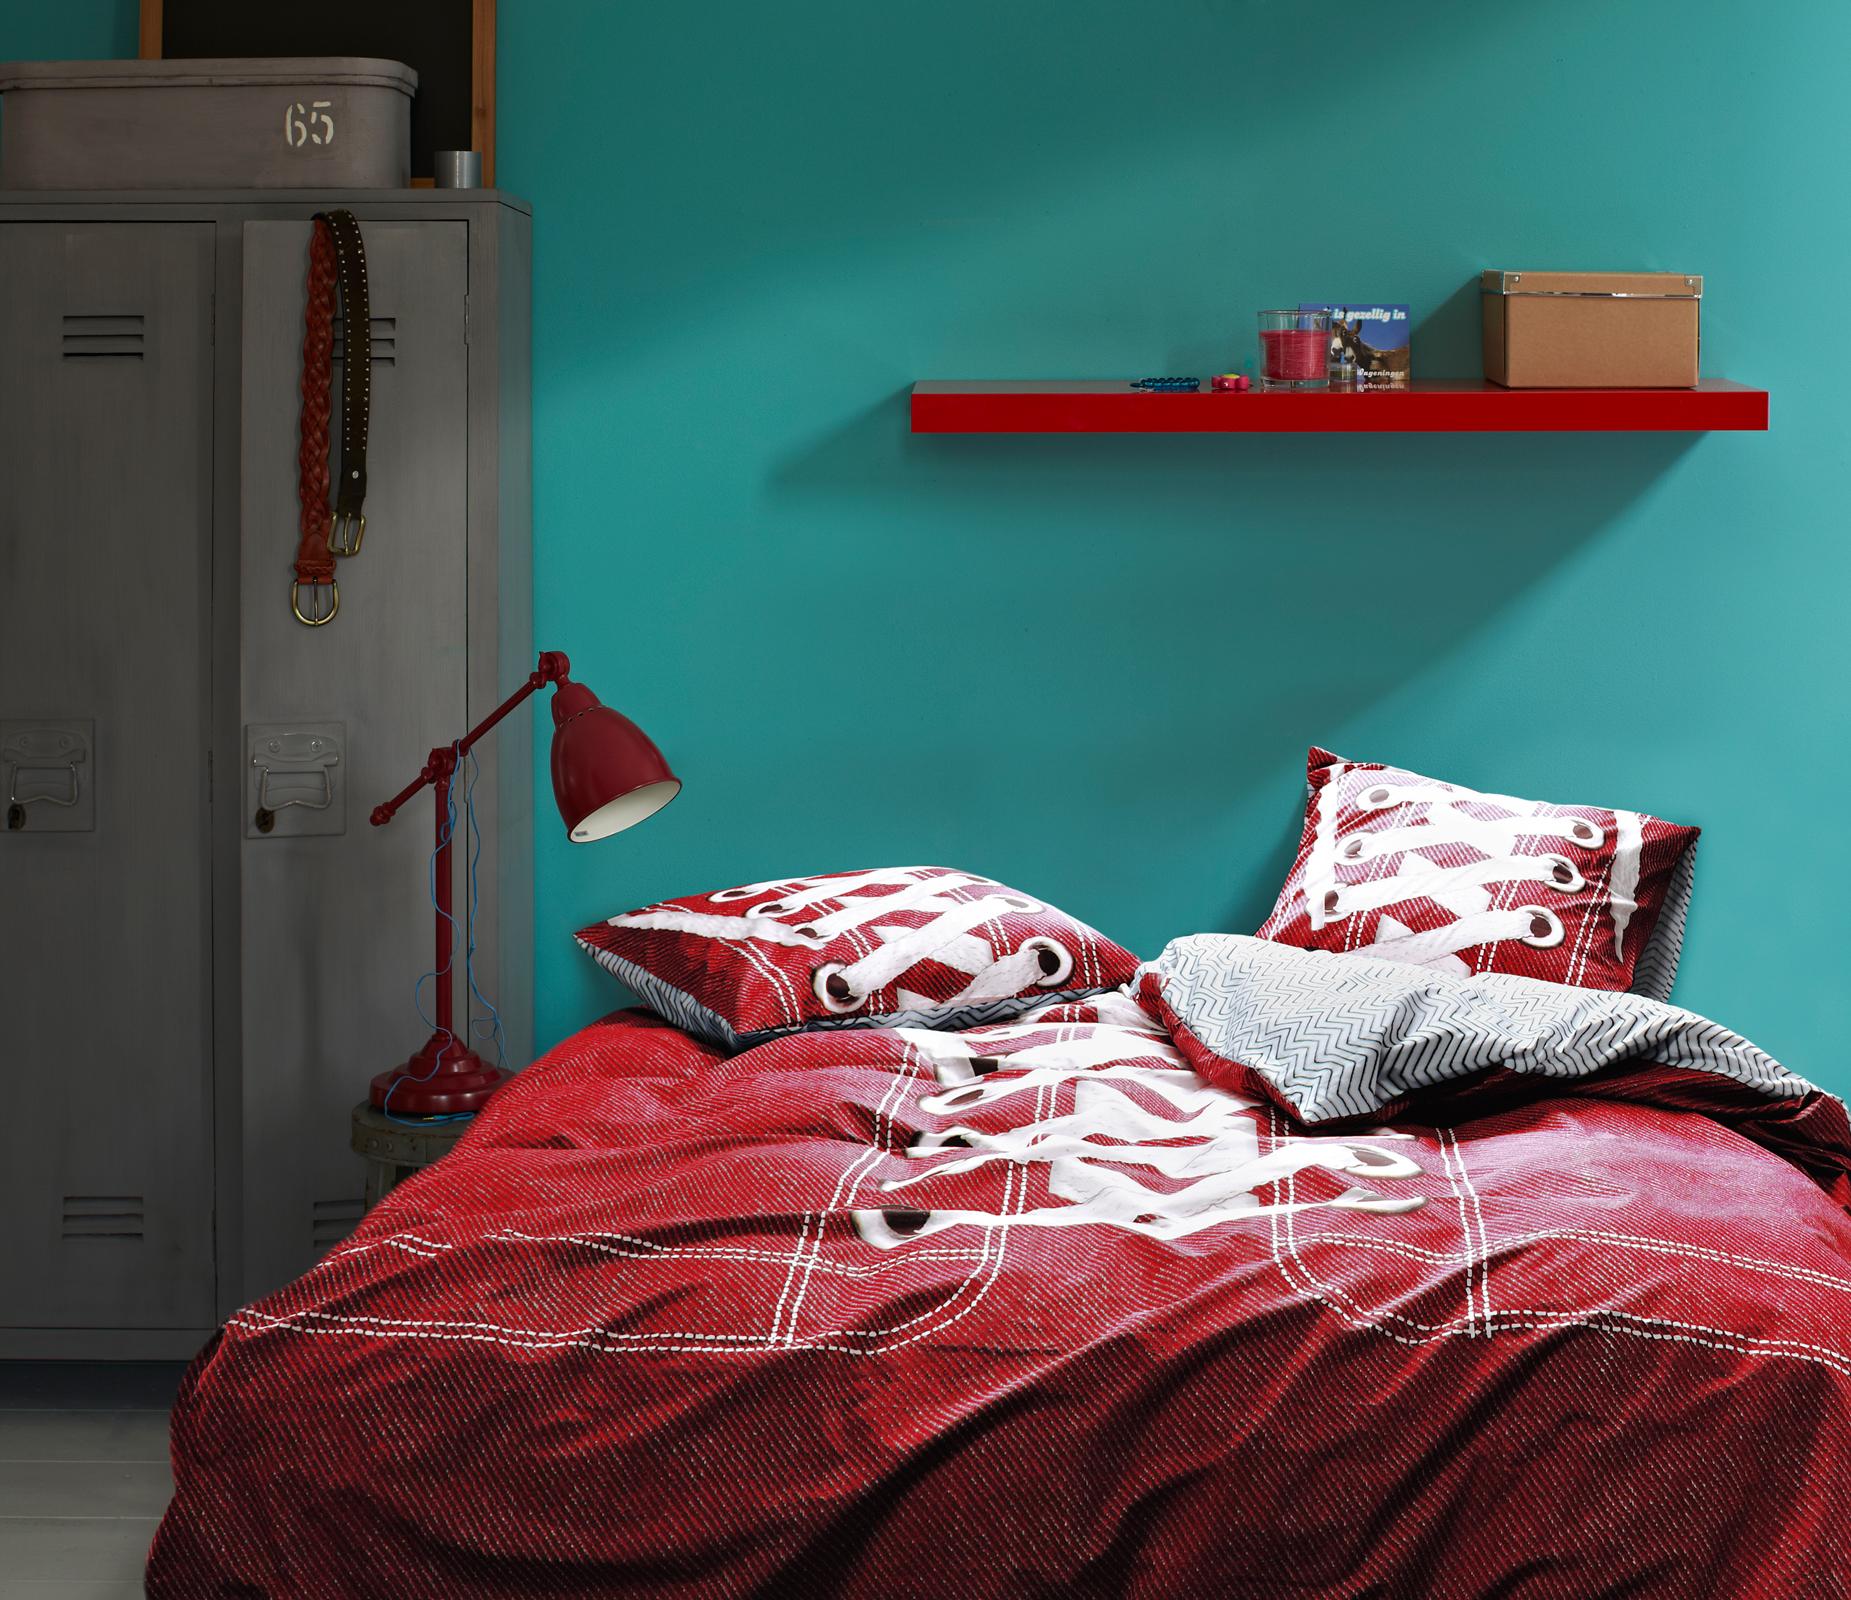 Einrichten mit Komplementärfarben #wandfarbe #bettwäsche #wandgestaltung #jugendzimmer #tischlampe #türkisewandfarbe #jugendbett #spind ©Essenza Home/Covers & Co